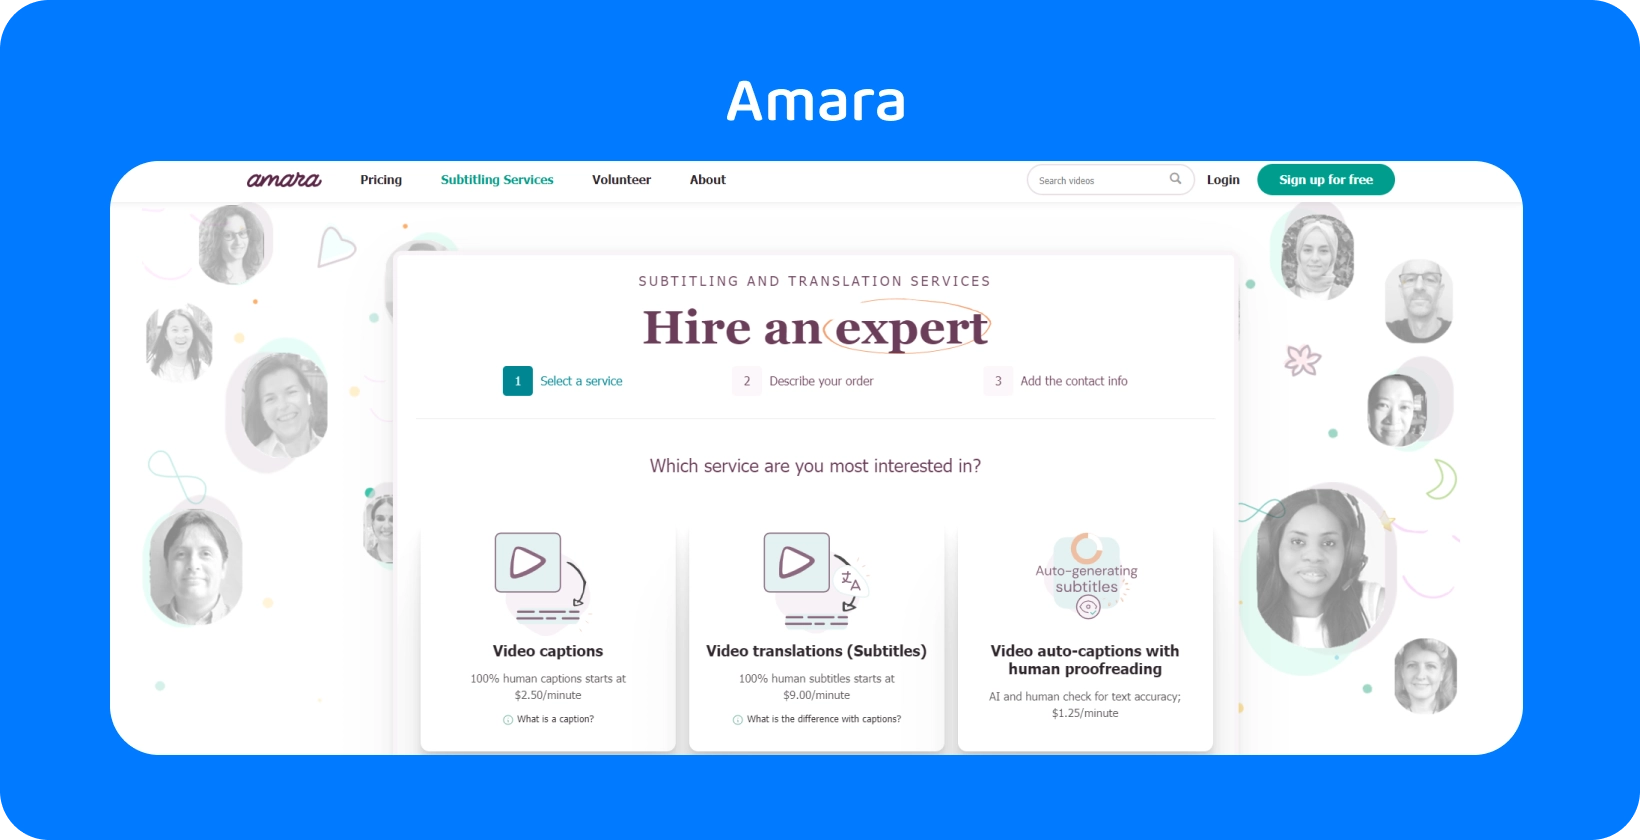 Laman web Amara menunjukkan cara menambah sari kata pada video dalam talian dengan mudah, meningkatkan kebolehcapaian penonton.